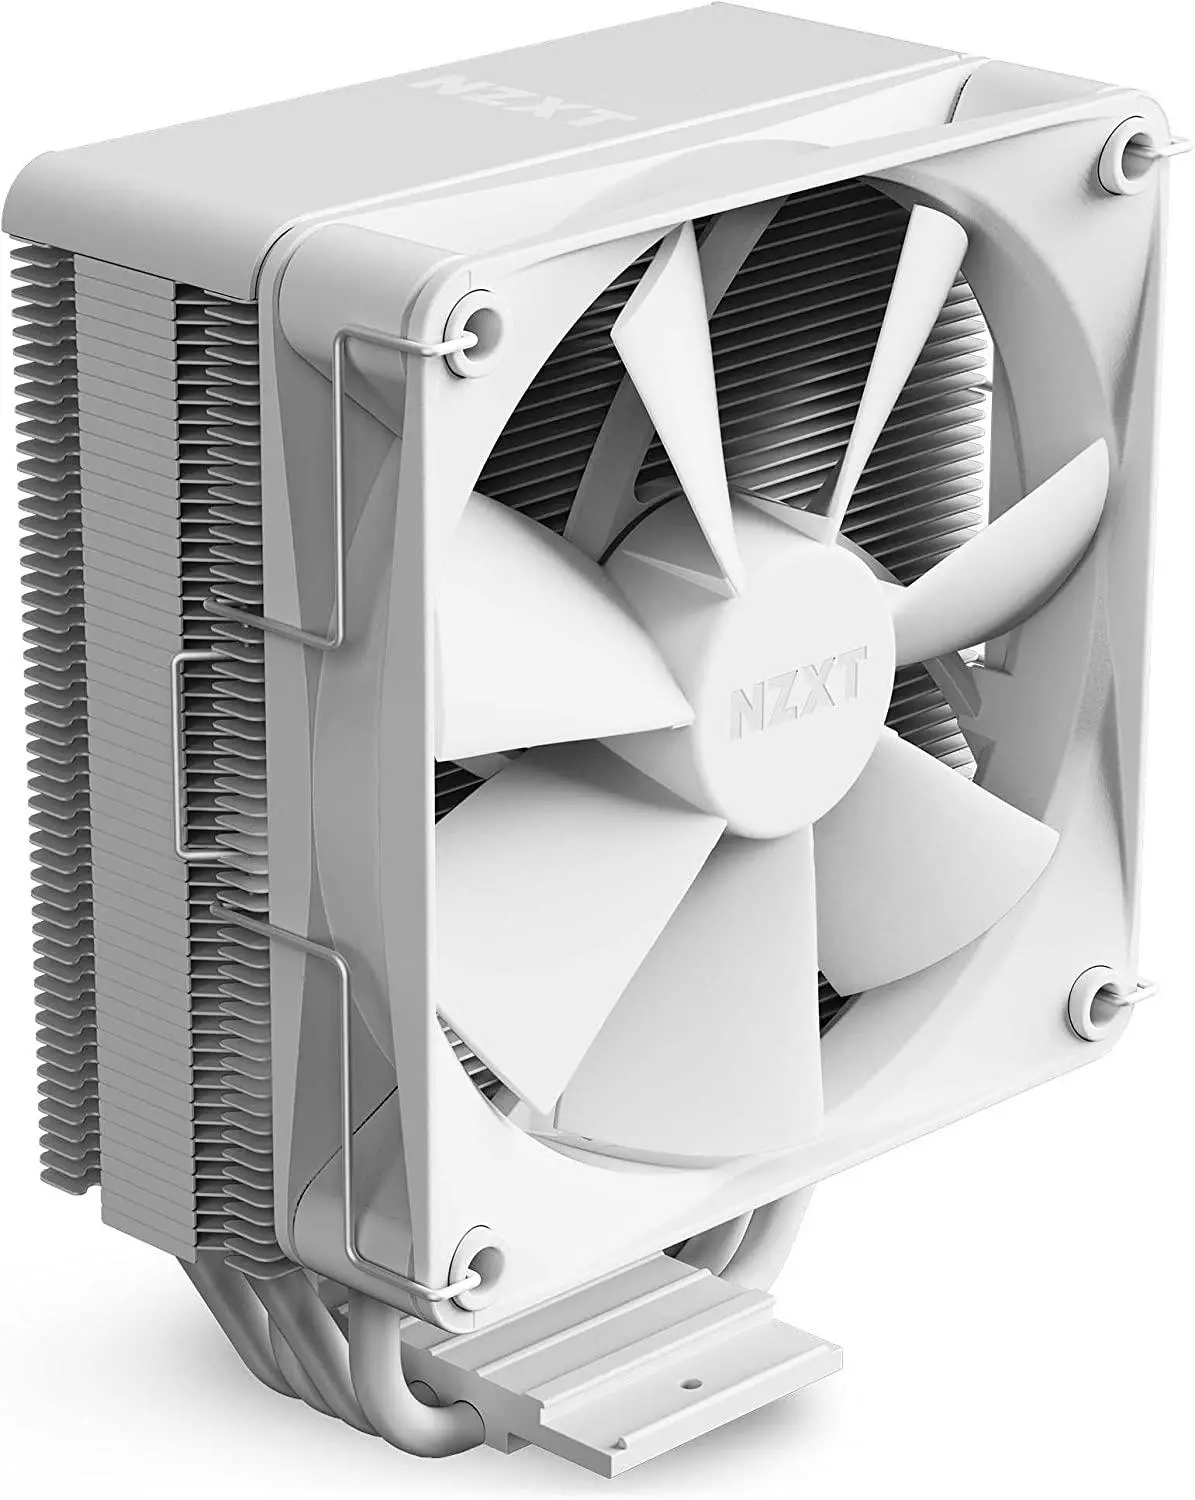 Охладител за процесор NZXT T120 - Бял RC-TN120-B1 AMD/Intel - image 1